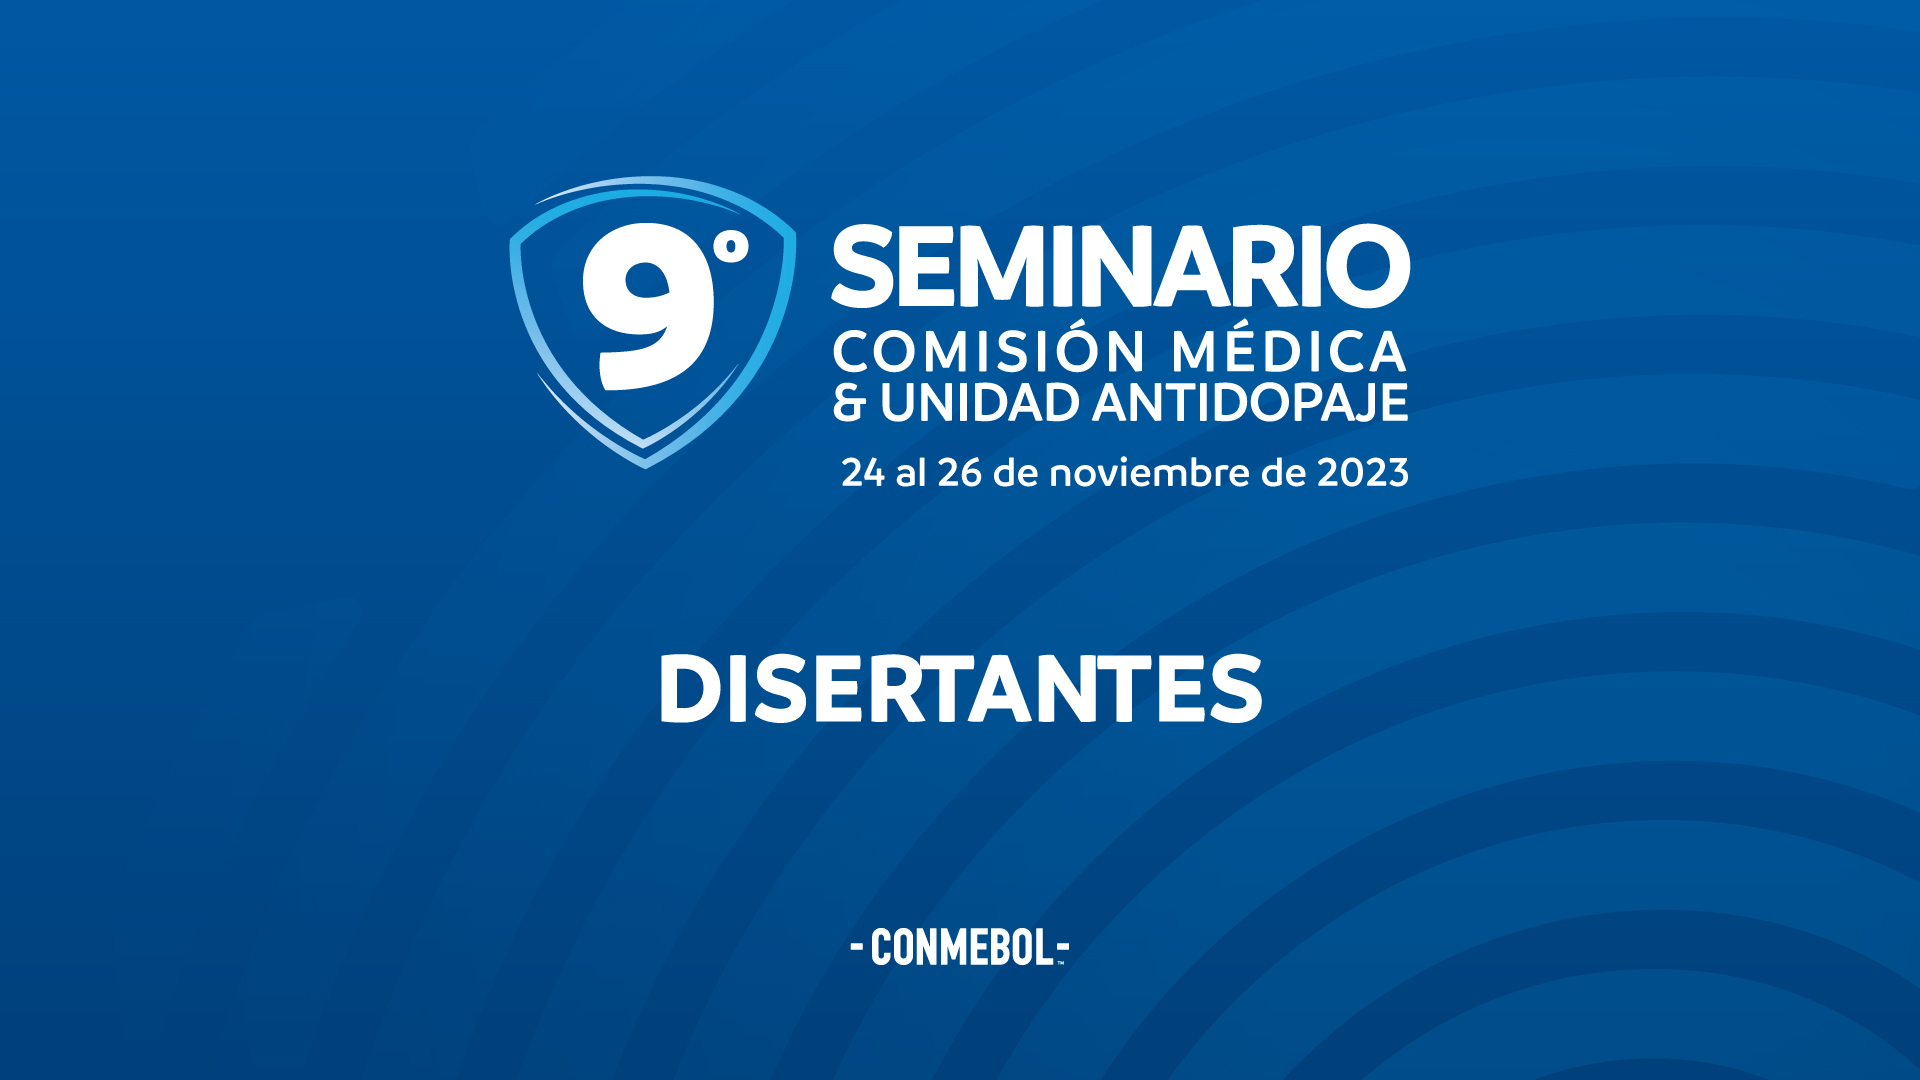 CONMEBOL erreichte das Symposium des Medizinischen Komitees und der Anti-Dubaja-Einheit 9°